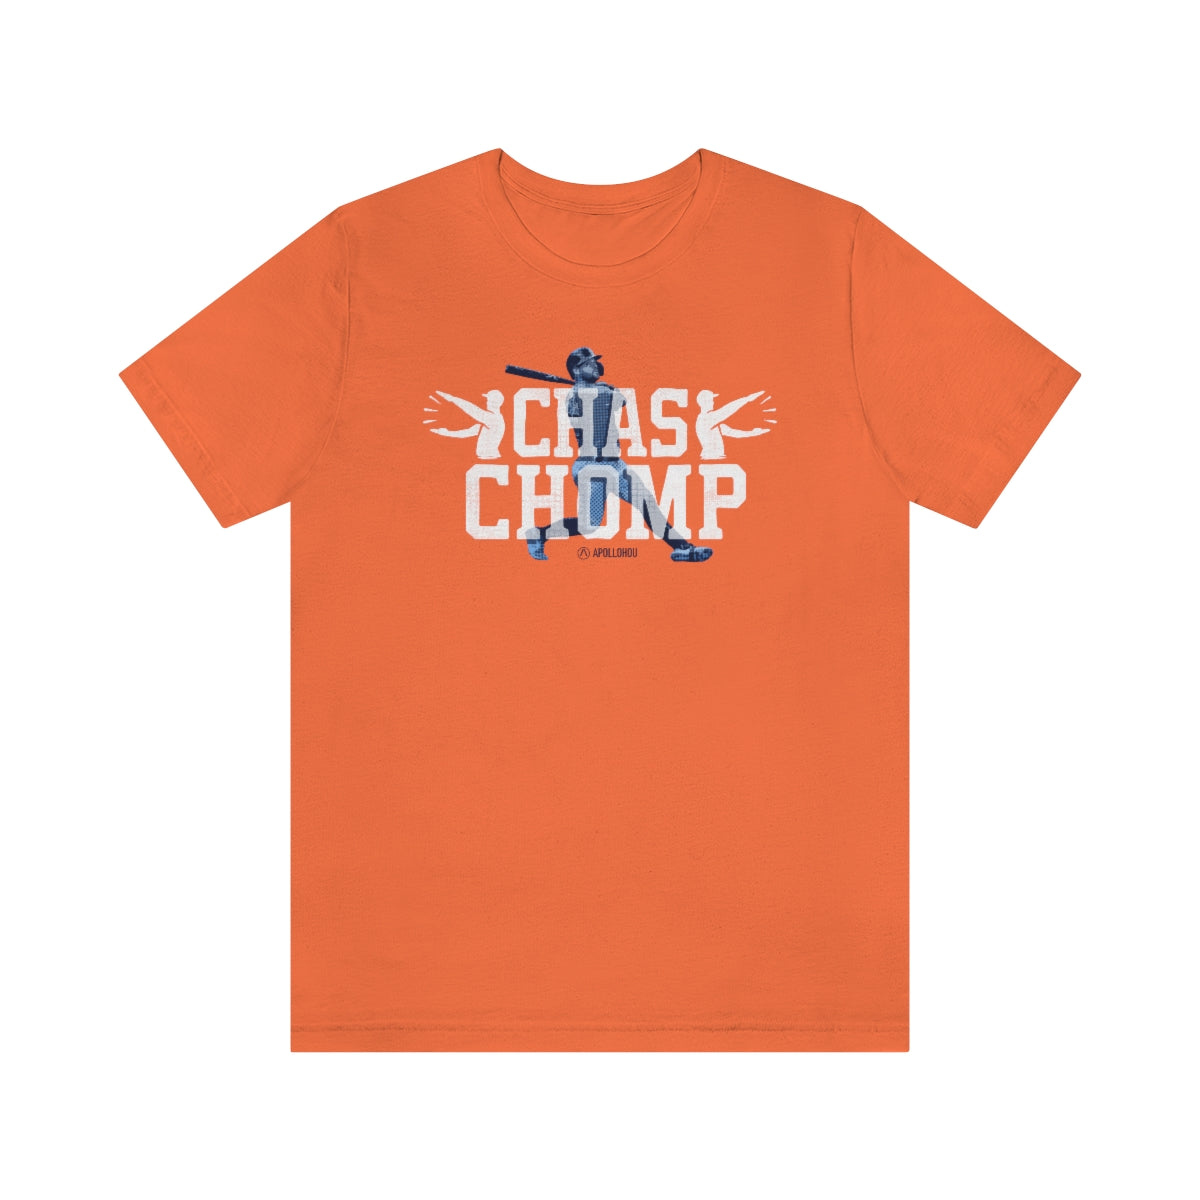 TODDLER - Chas Chomp, Vintage Orange